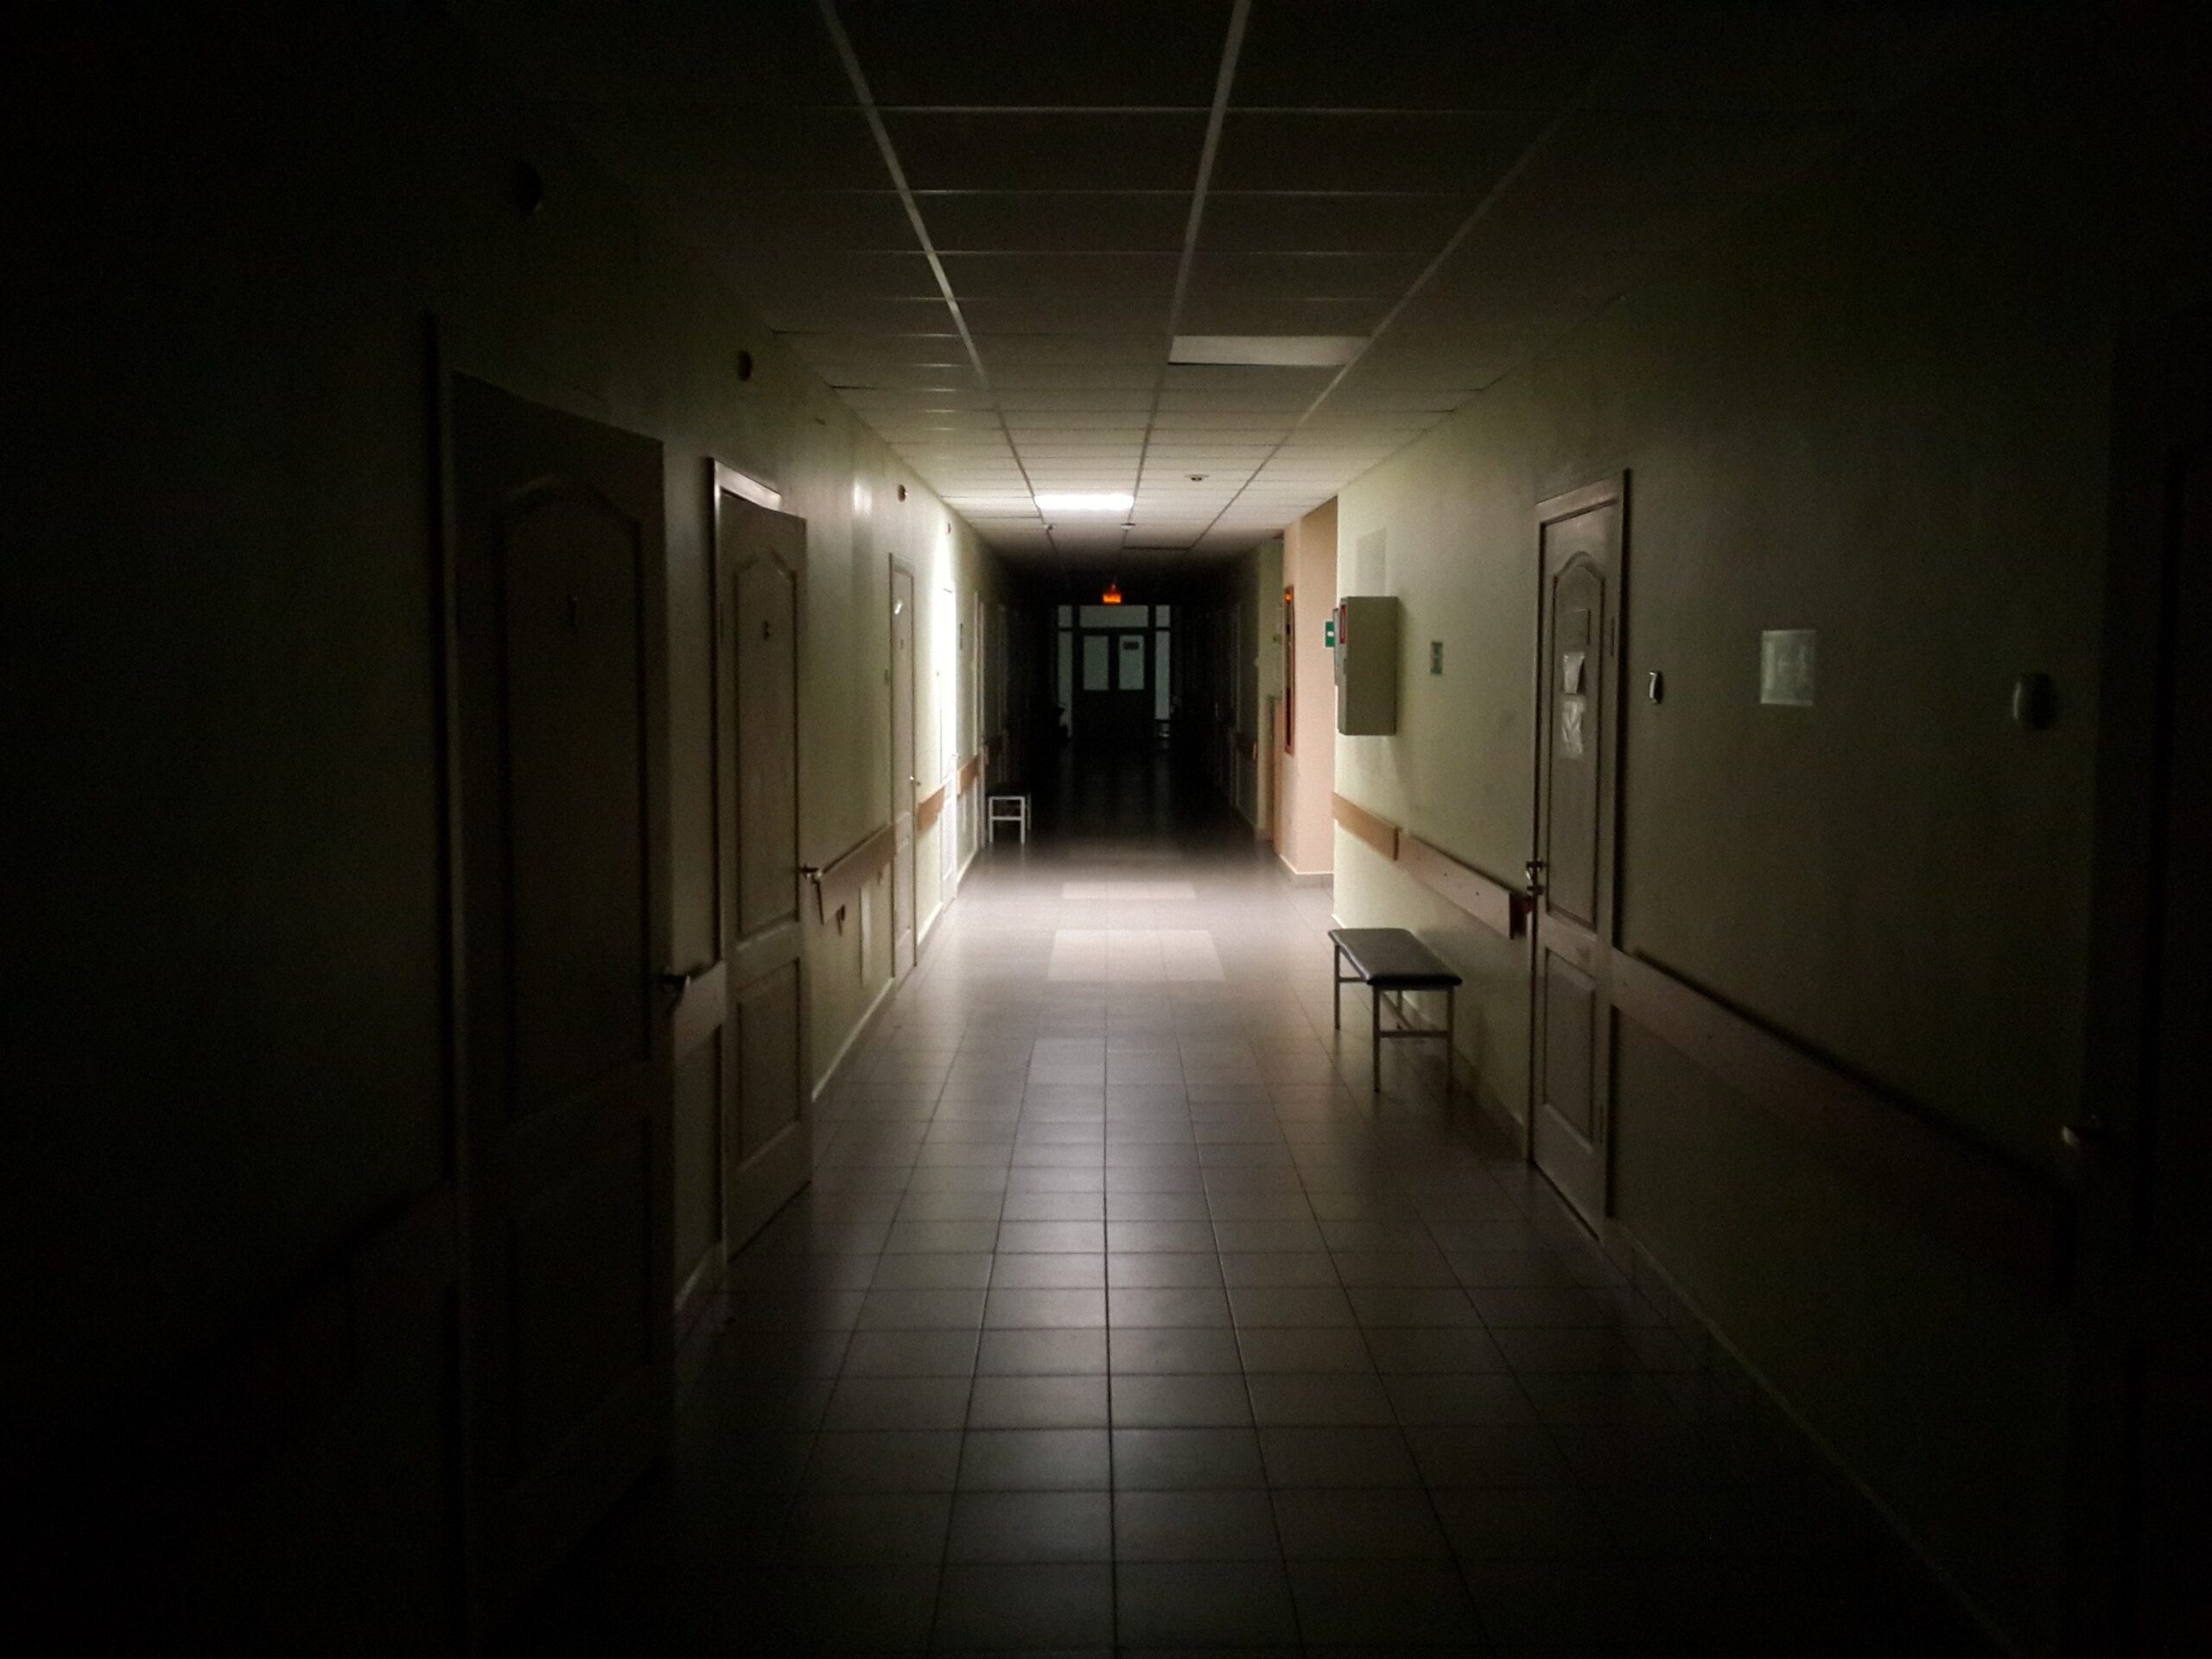 Санитар психиатрической больницы получил 4 года колонии за избиение несовершеннолетнего пациента 